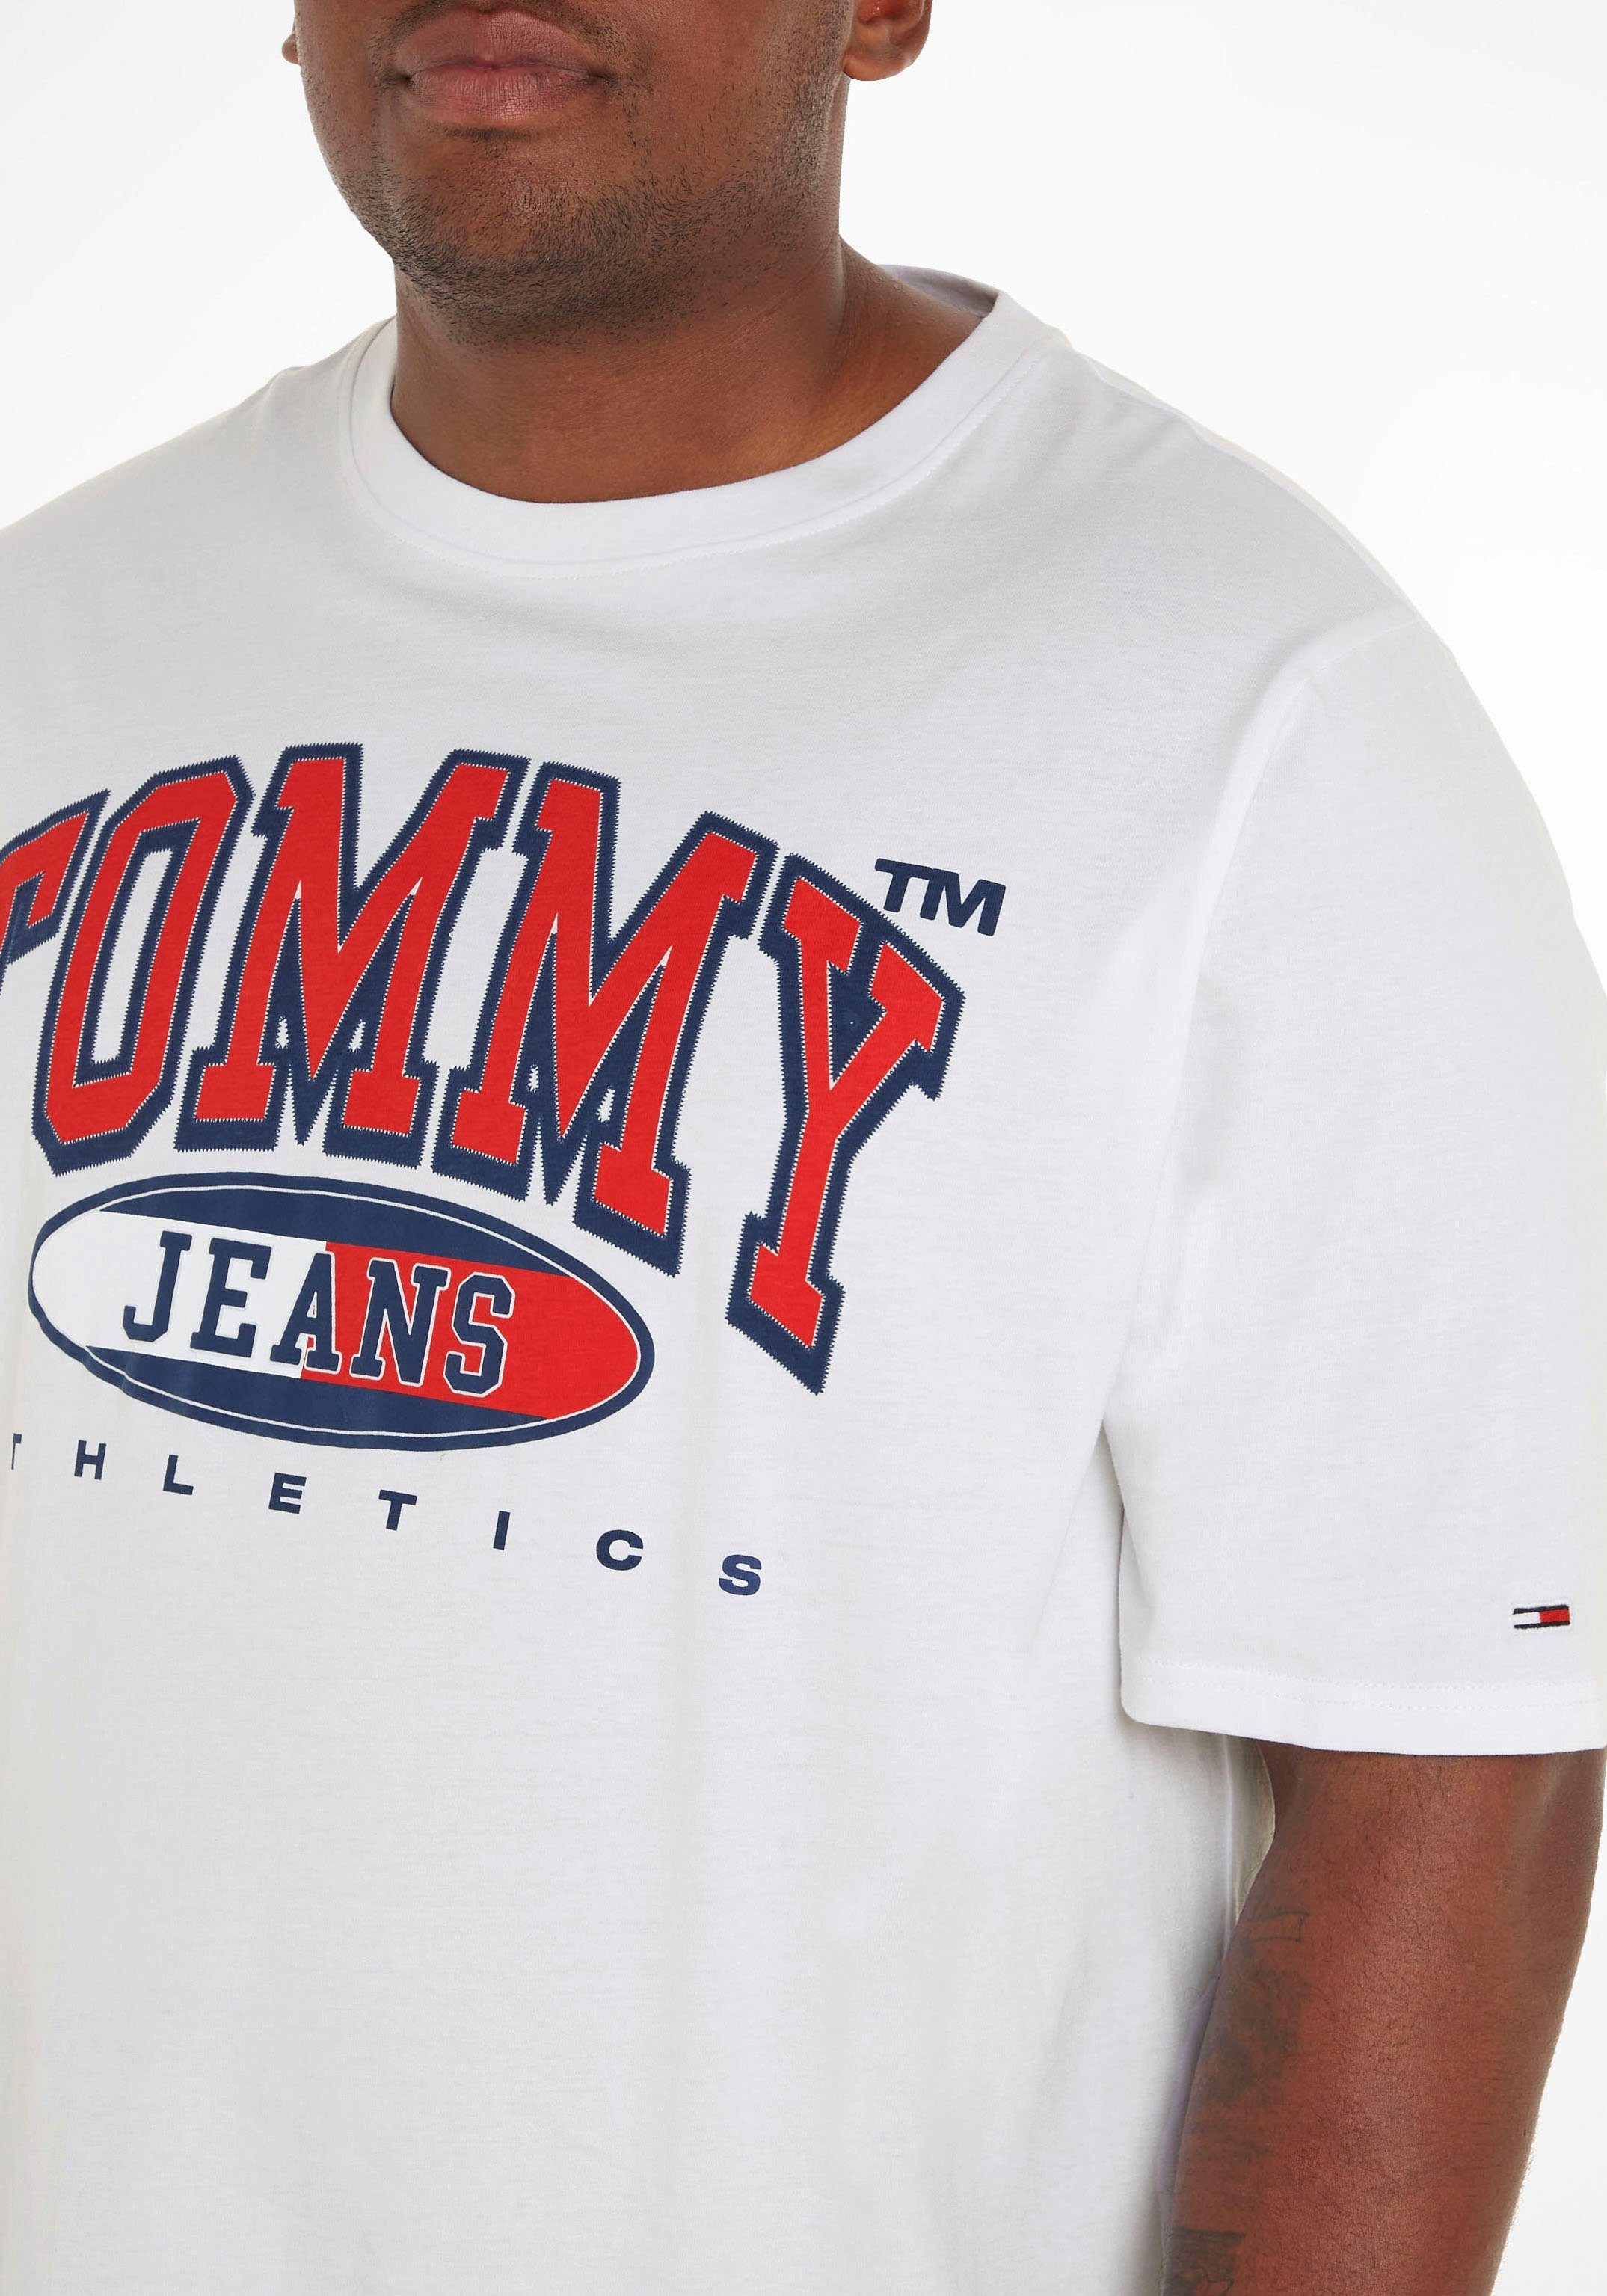 mit Brust Tommy Plus Jeans der Print T-Shirt GRAPHIC TEE PLUS White auf ESSENTIAL TJM